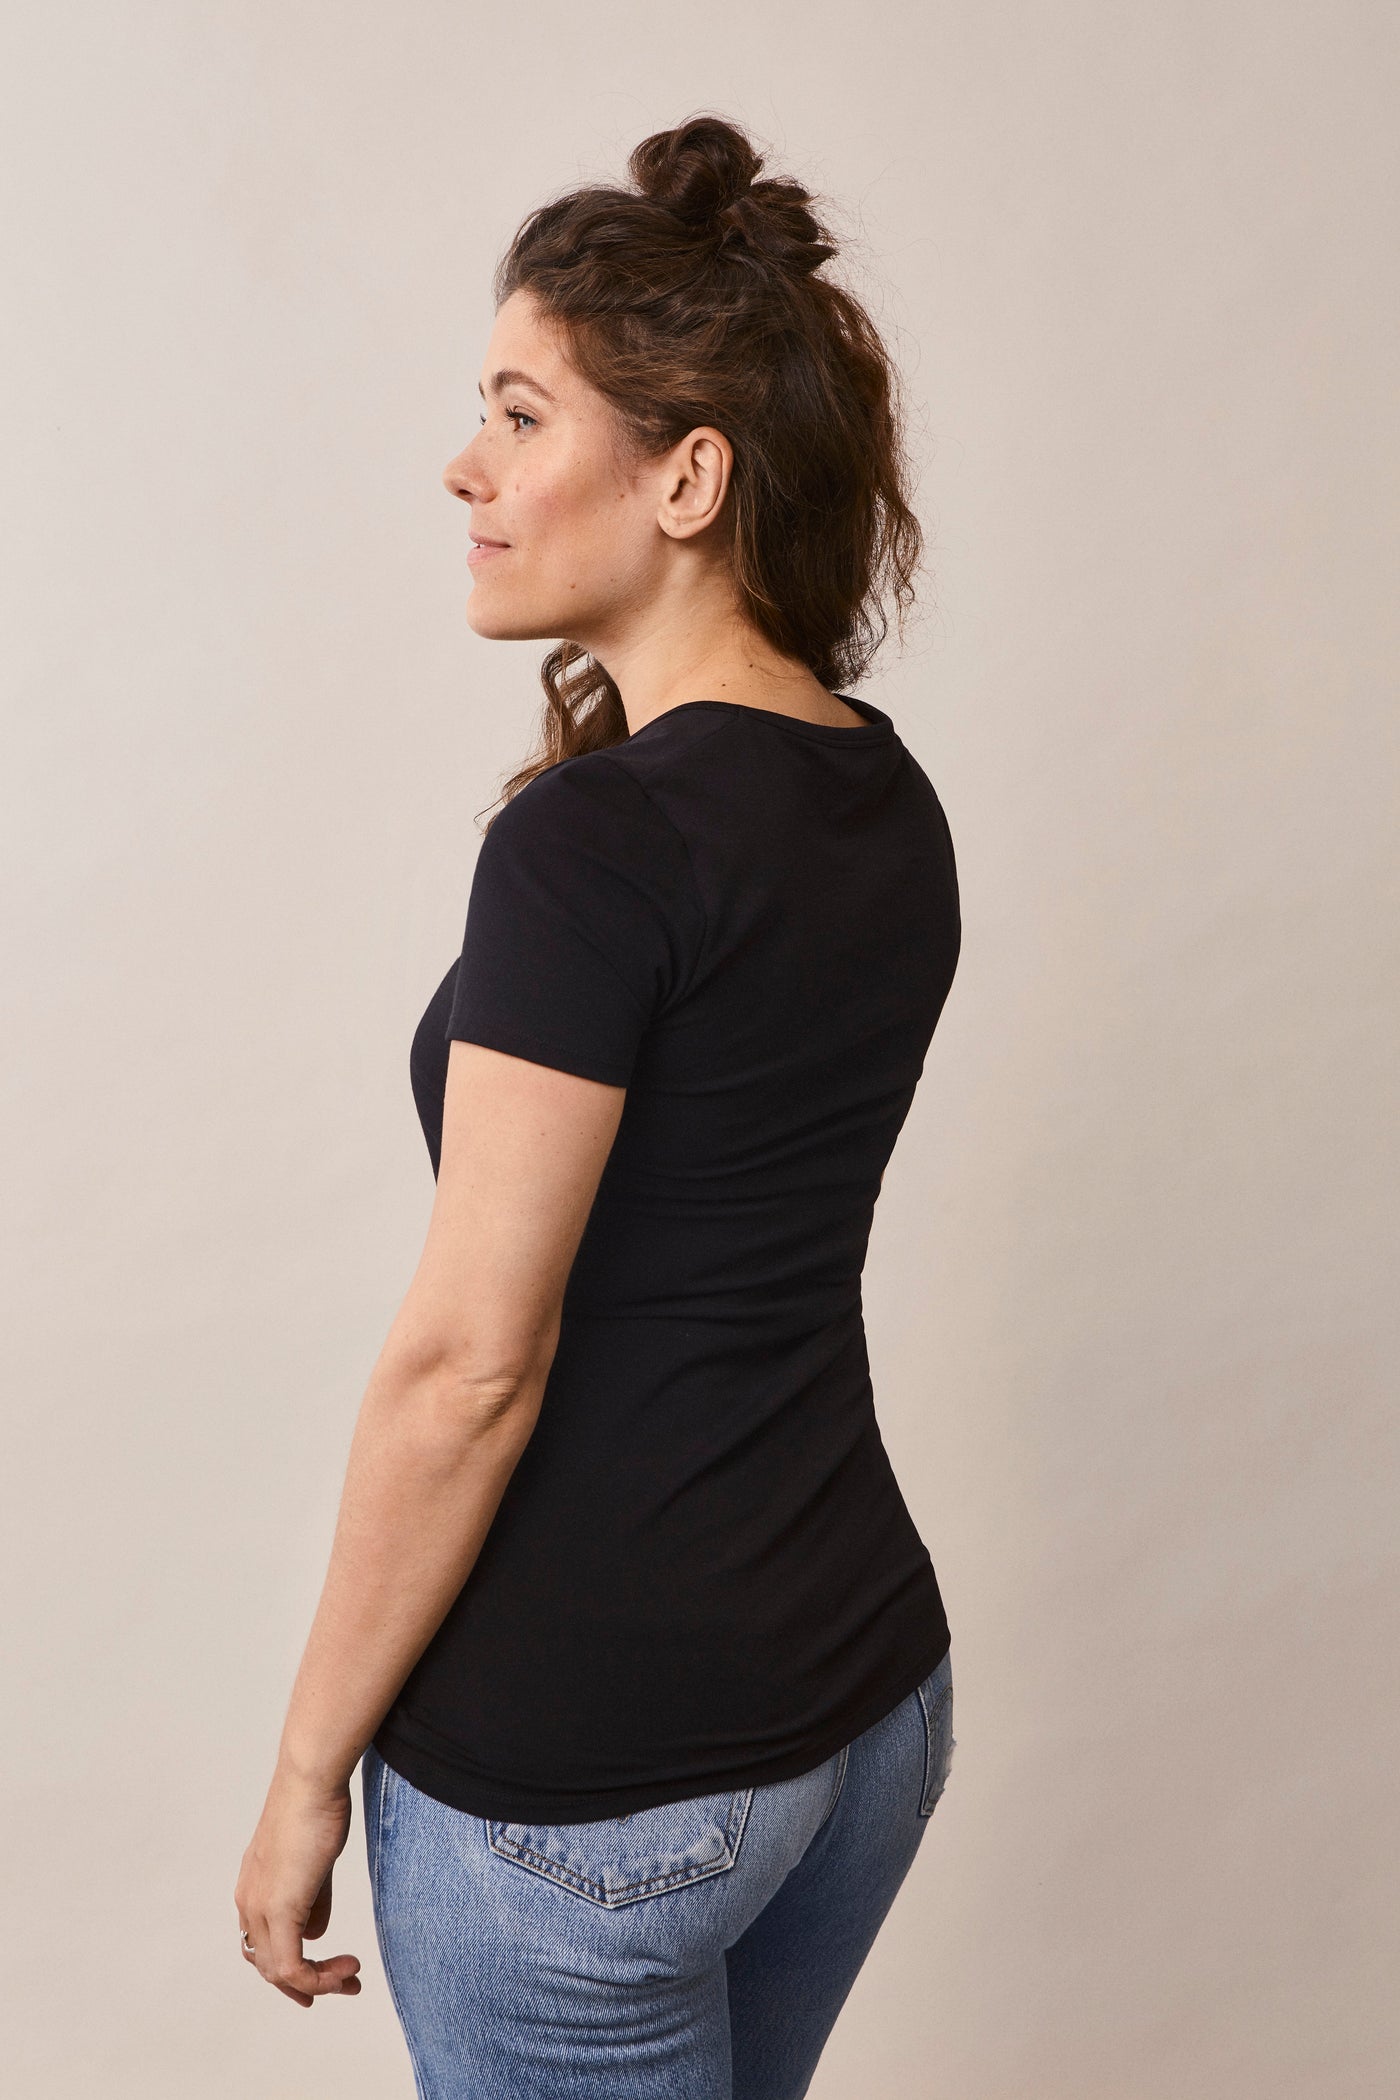 Femme de 3/4 portant le t-shirt Le Classique manches courtes de grossesse et d'allaitement en coton bio certifié GOTS, coloris noir.